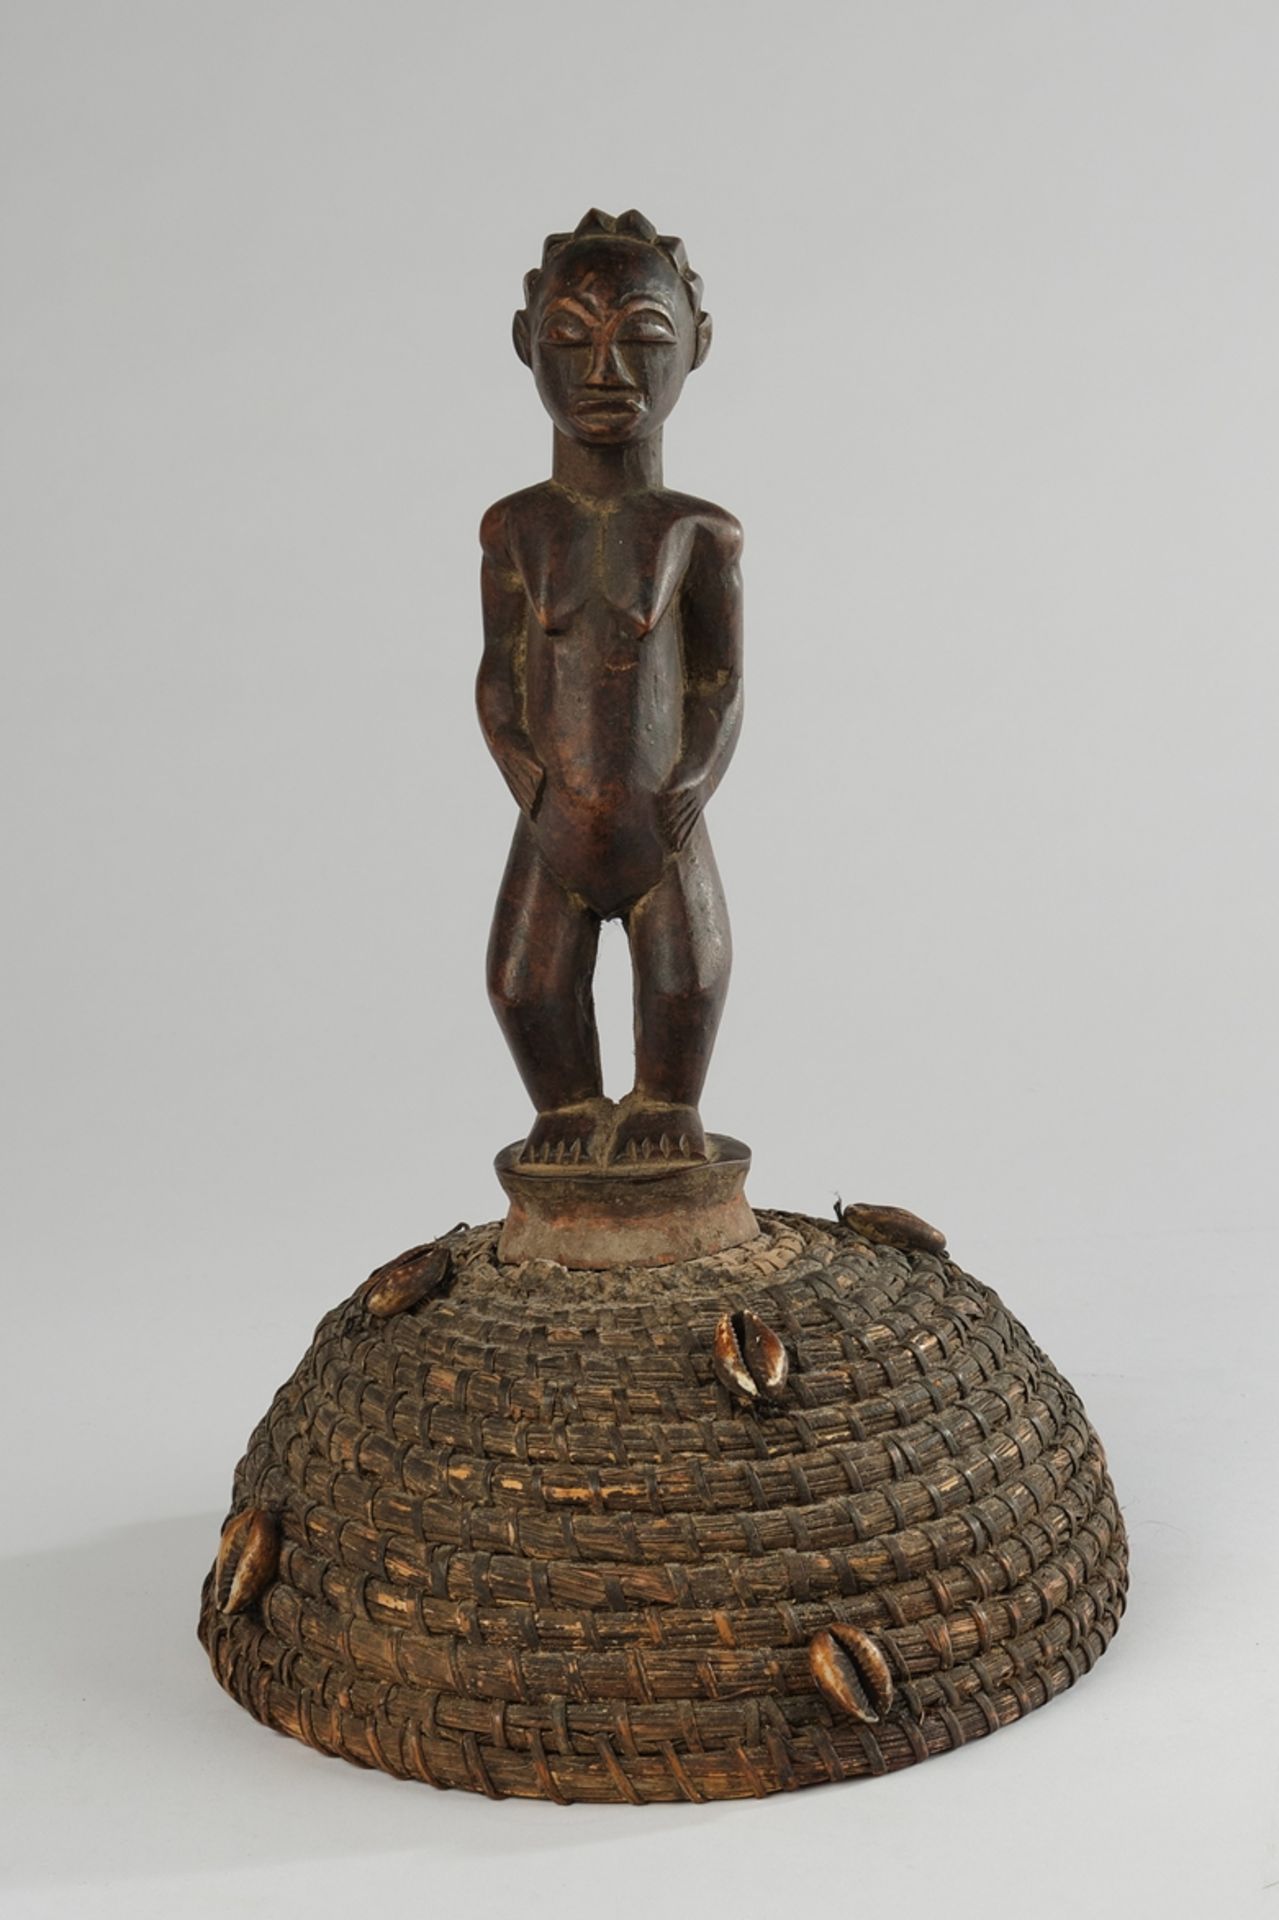 Tanzaufsatz, Luba, Kongo, Afrika, stehende weibliche Figur aus Holz auf Kappe aus Pflanzenfasern mi